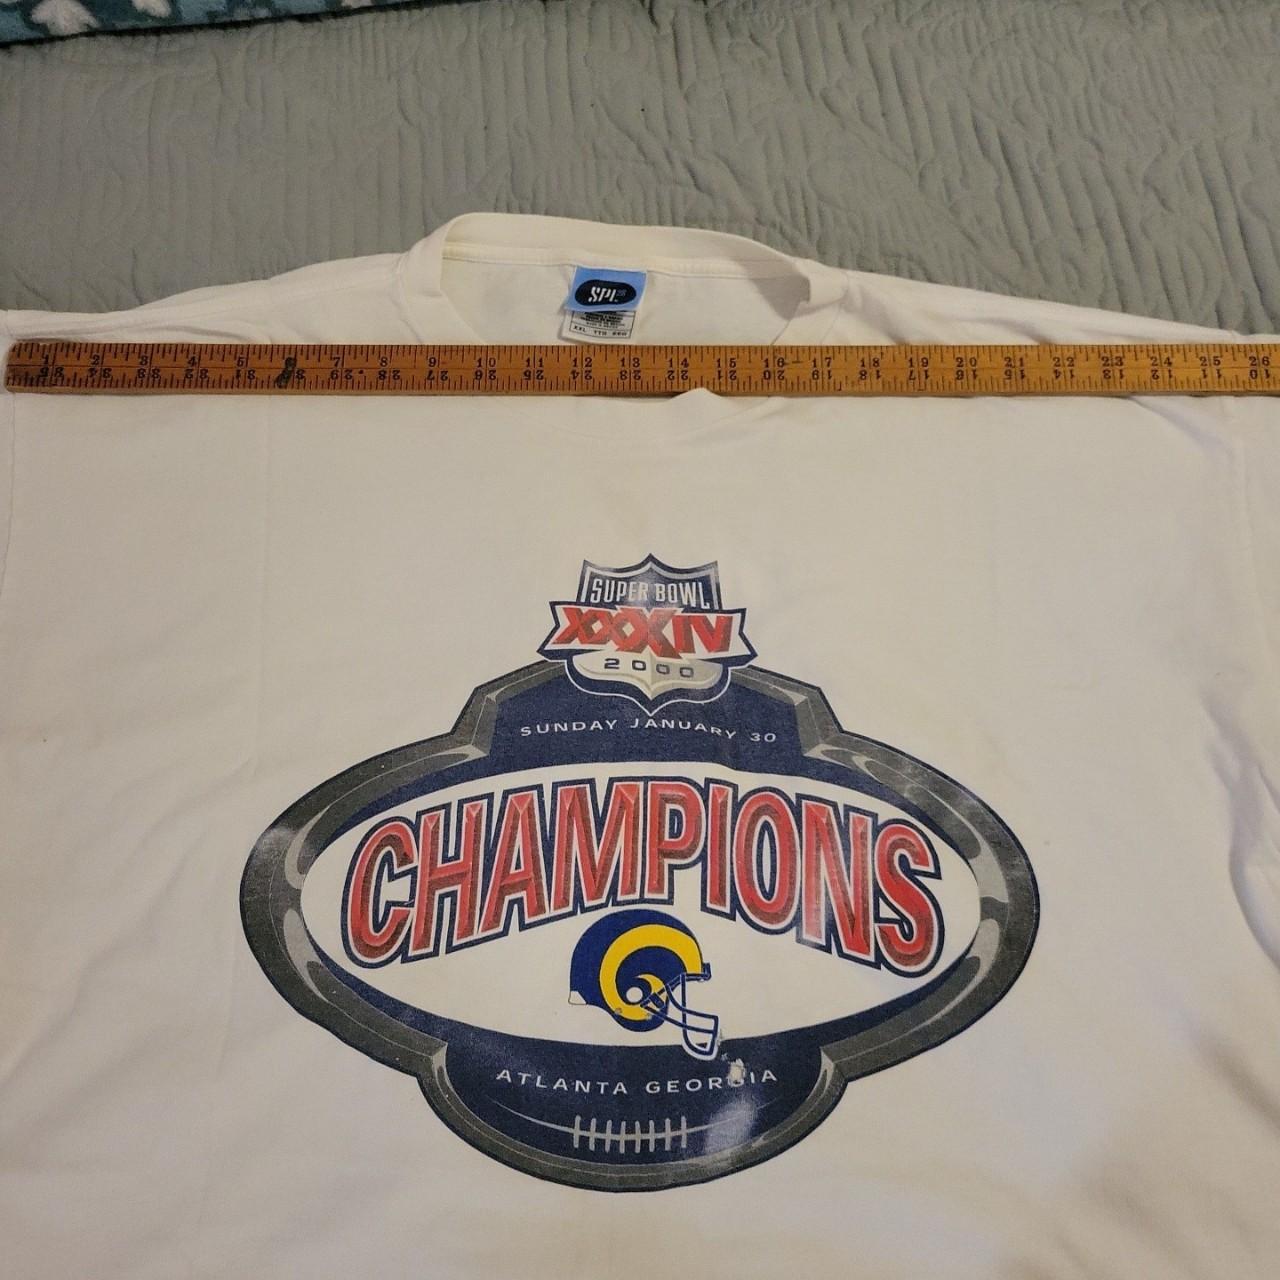 Vintage Vintage St Louis Rams Hoodie Sweatshirt NFL Y2K